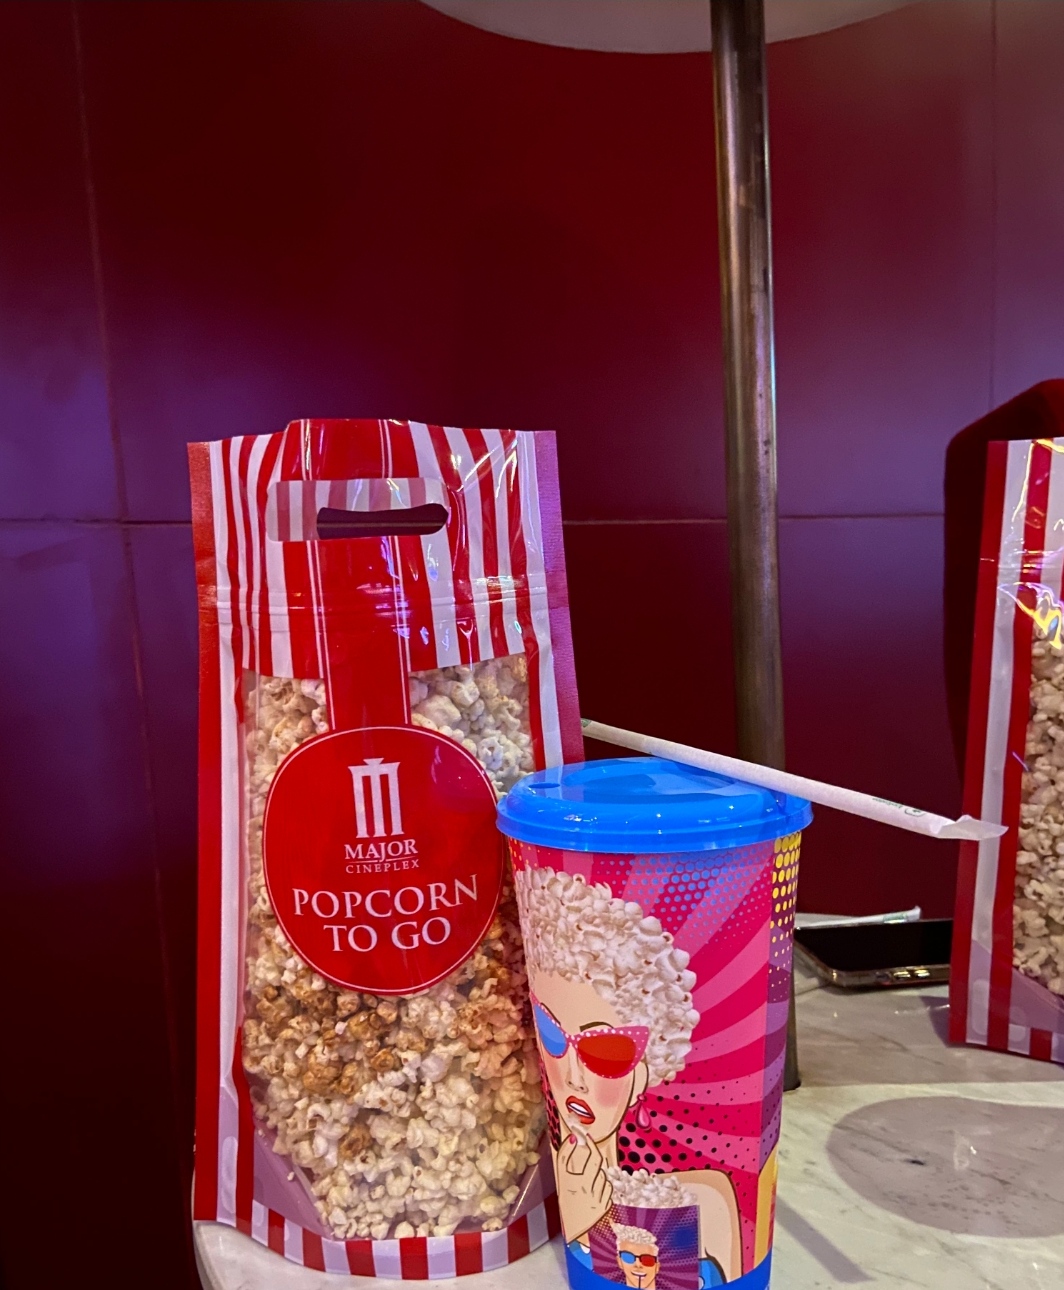 ข้อมูลเกี่ยวกับ [คูปอง] MAJOR Popcorn เมเจอร์ Combo set ป๊อปคอร์น 85oz น้ำ 44oz ราคาถูก พร้อมส่งใช้ได้ทันที !!!